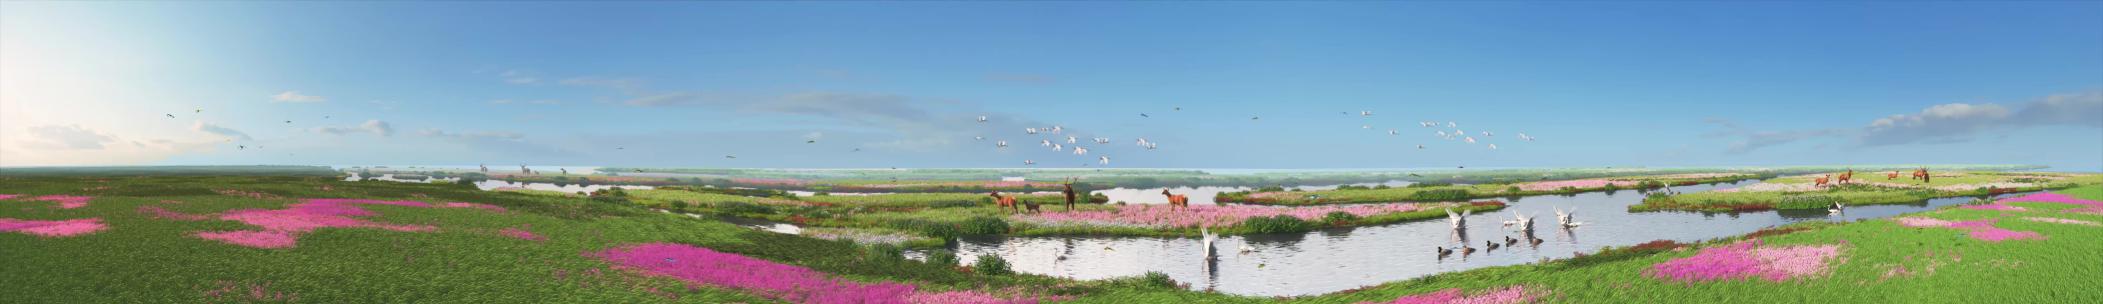 10三维绿色生态湿地动画演绎